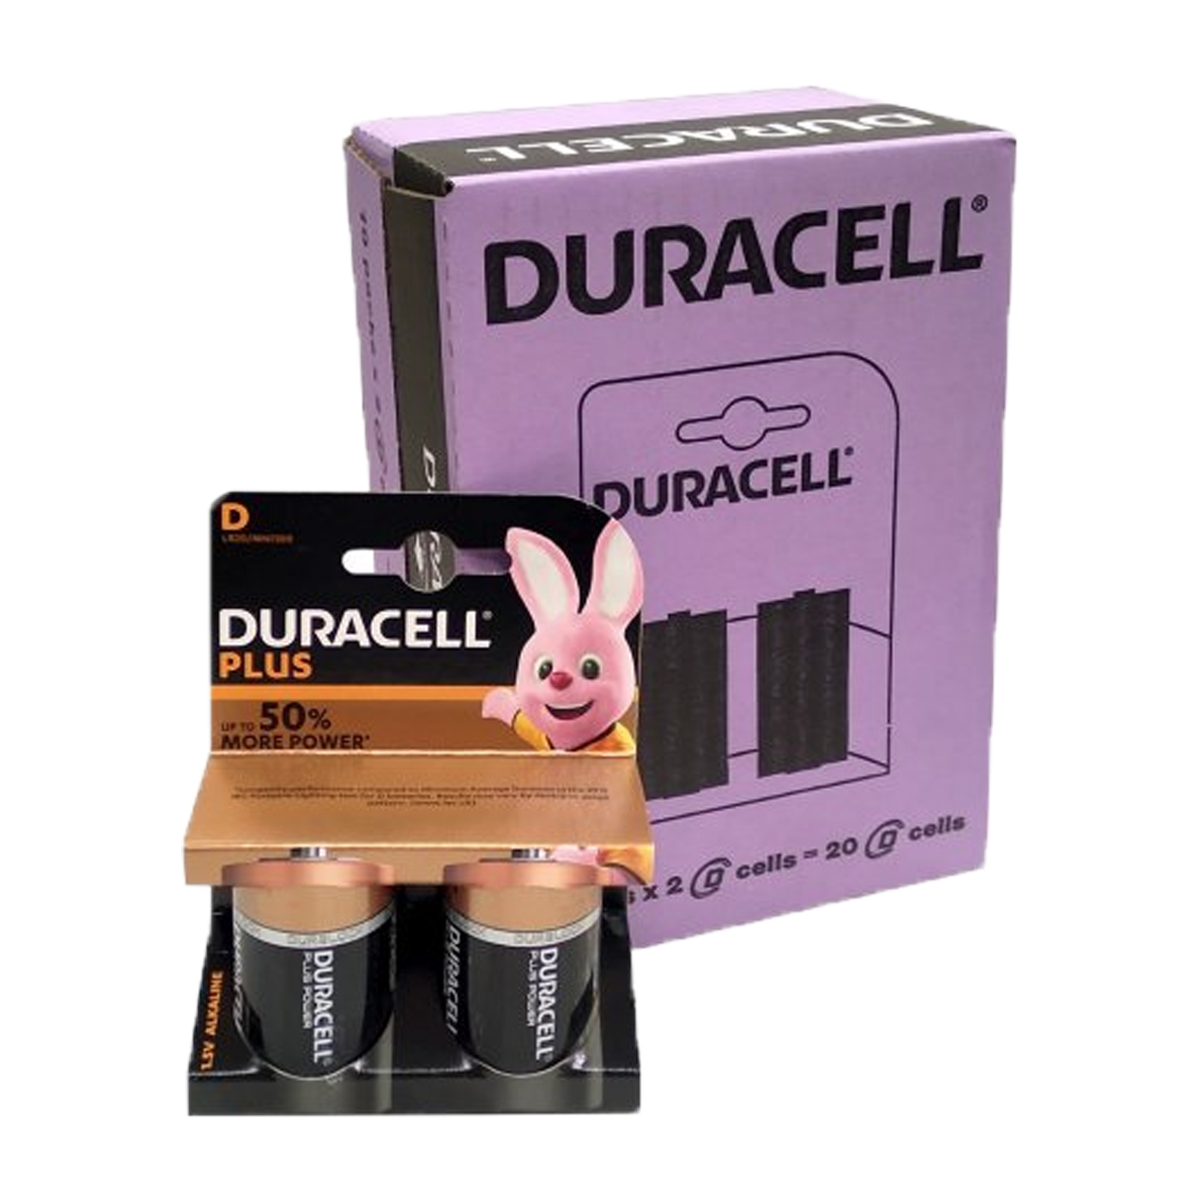 Duracell D Plus Batteries (10 Pack)